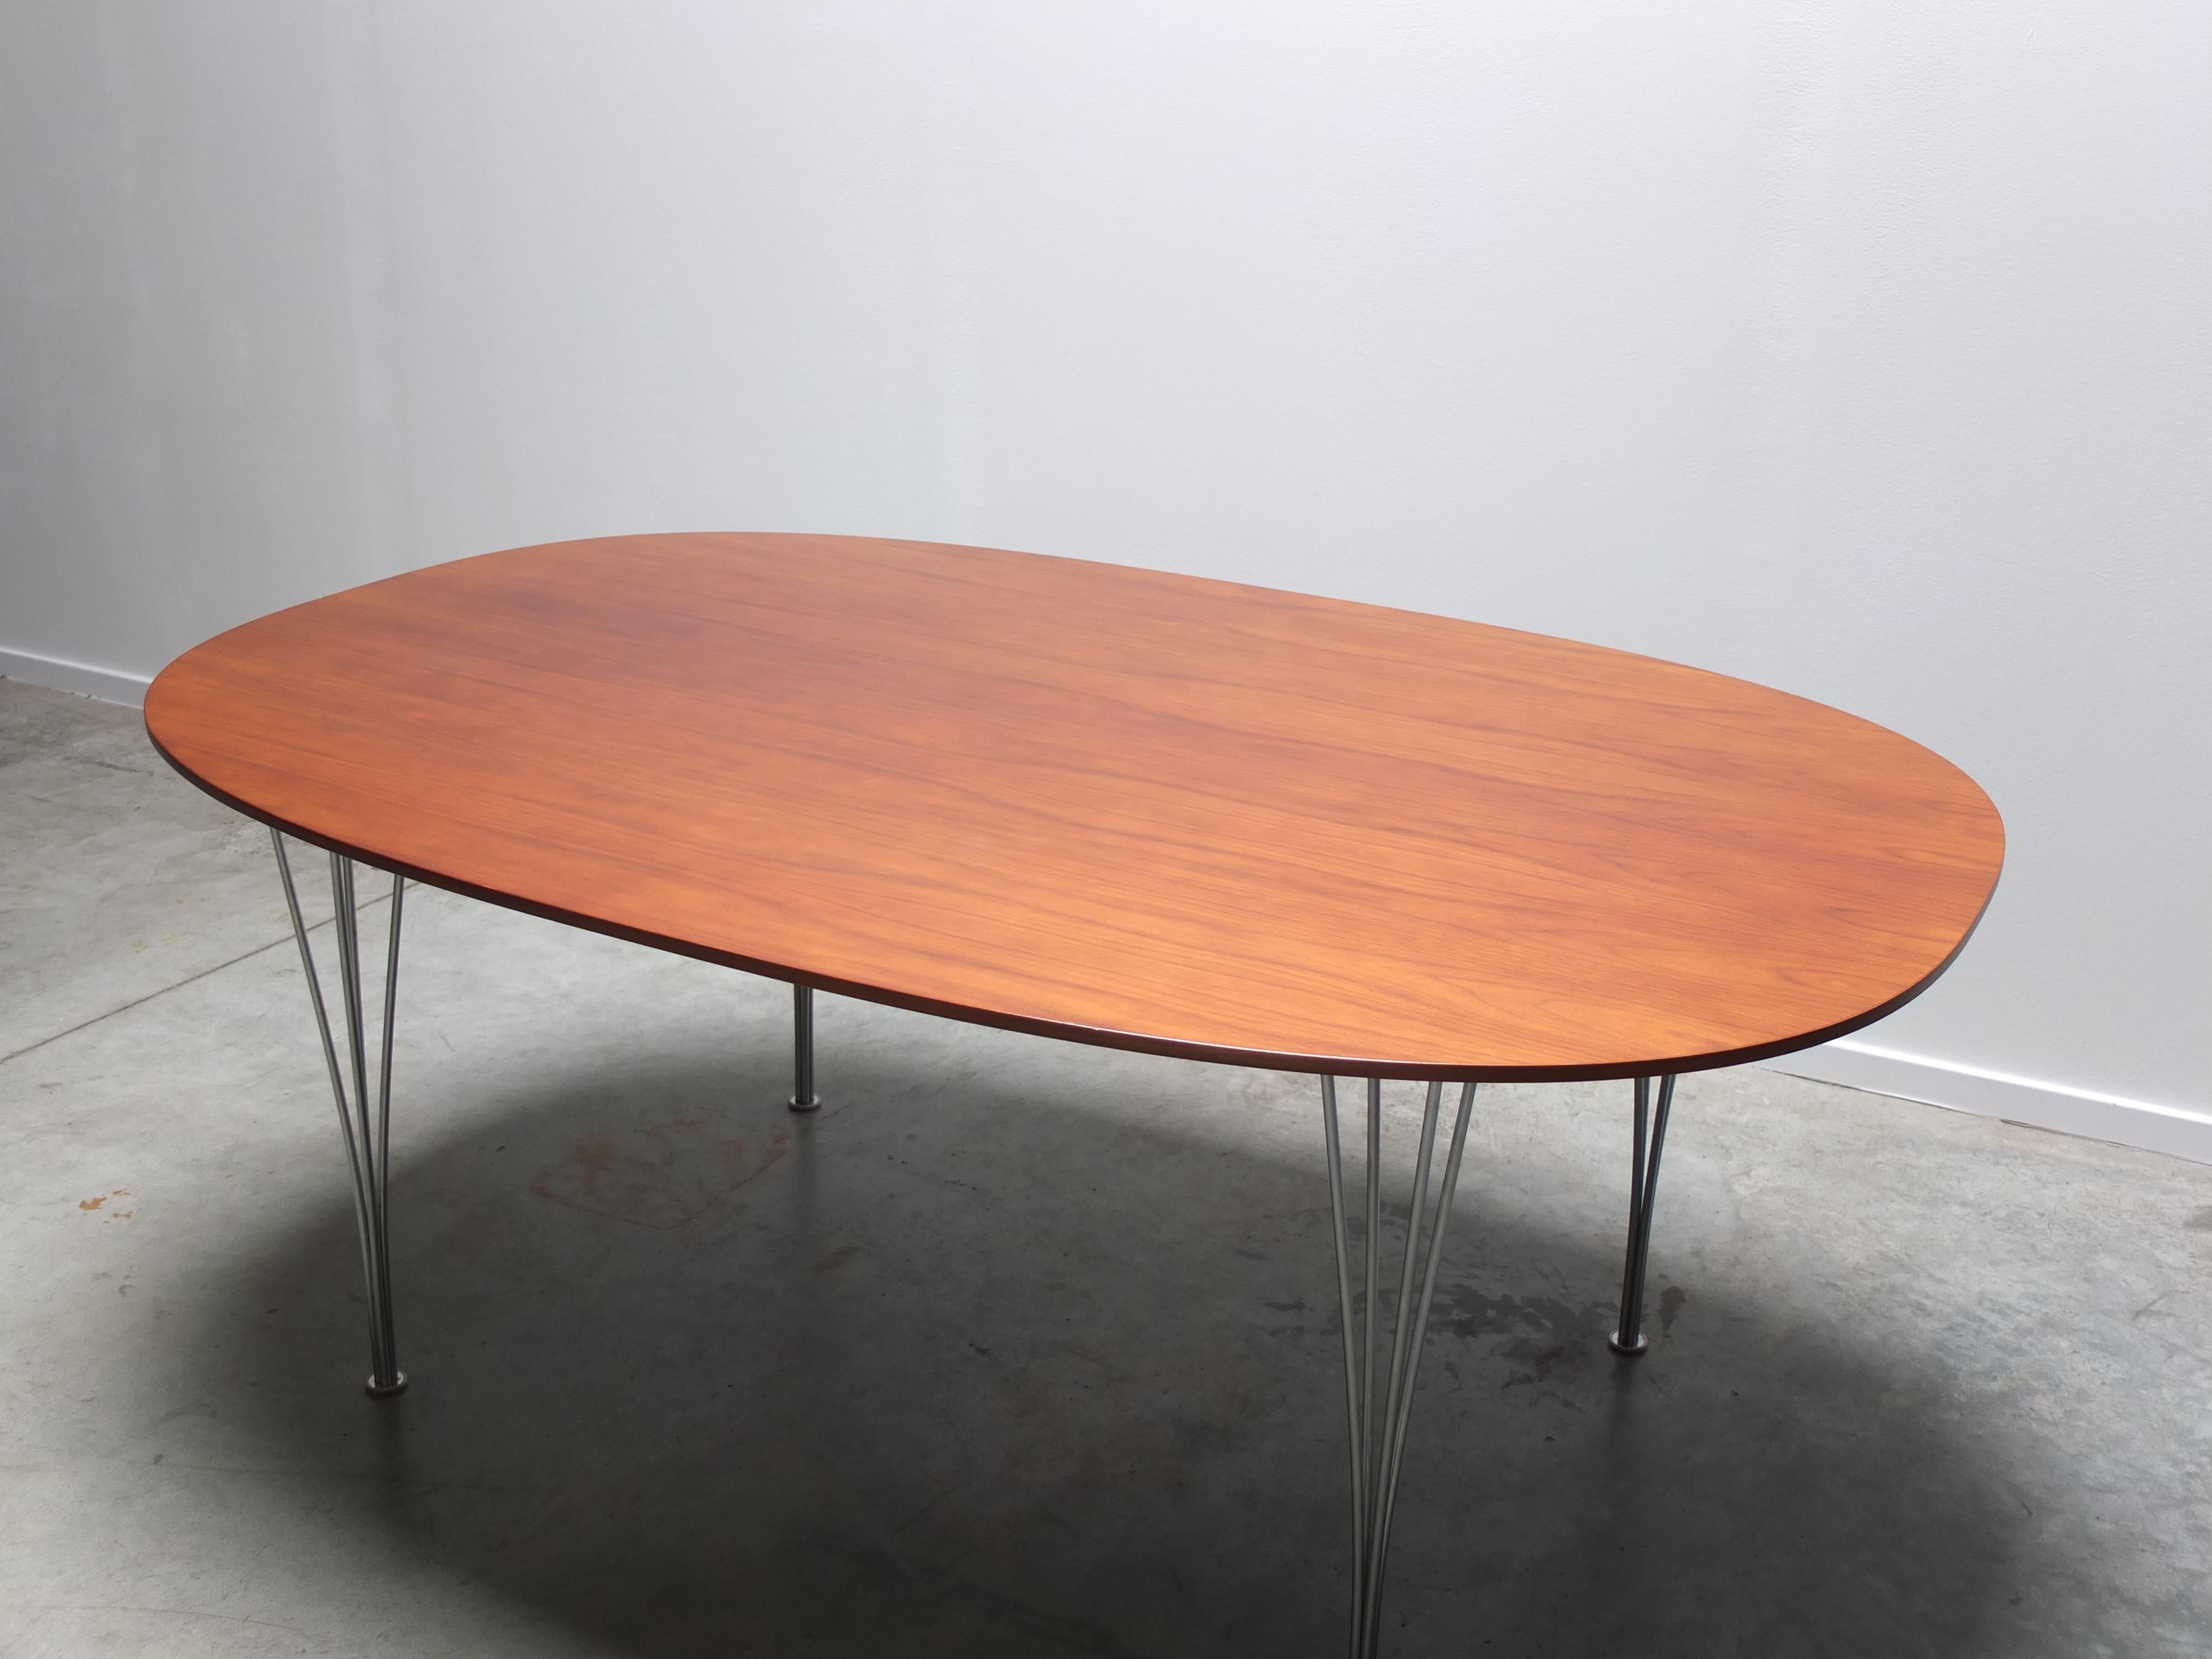 Tisch „Superellipse“ aus Nussbaumholz von Piet Hein & Bruno Mathsson für Fritz Hansen, 1960 (Dänisch)